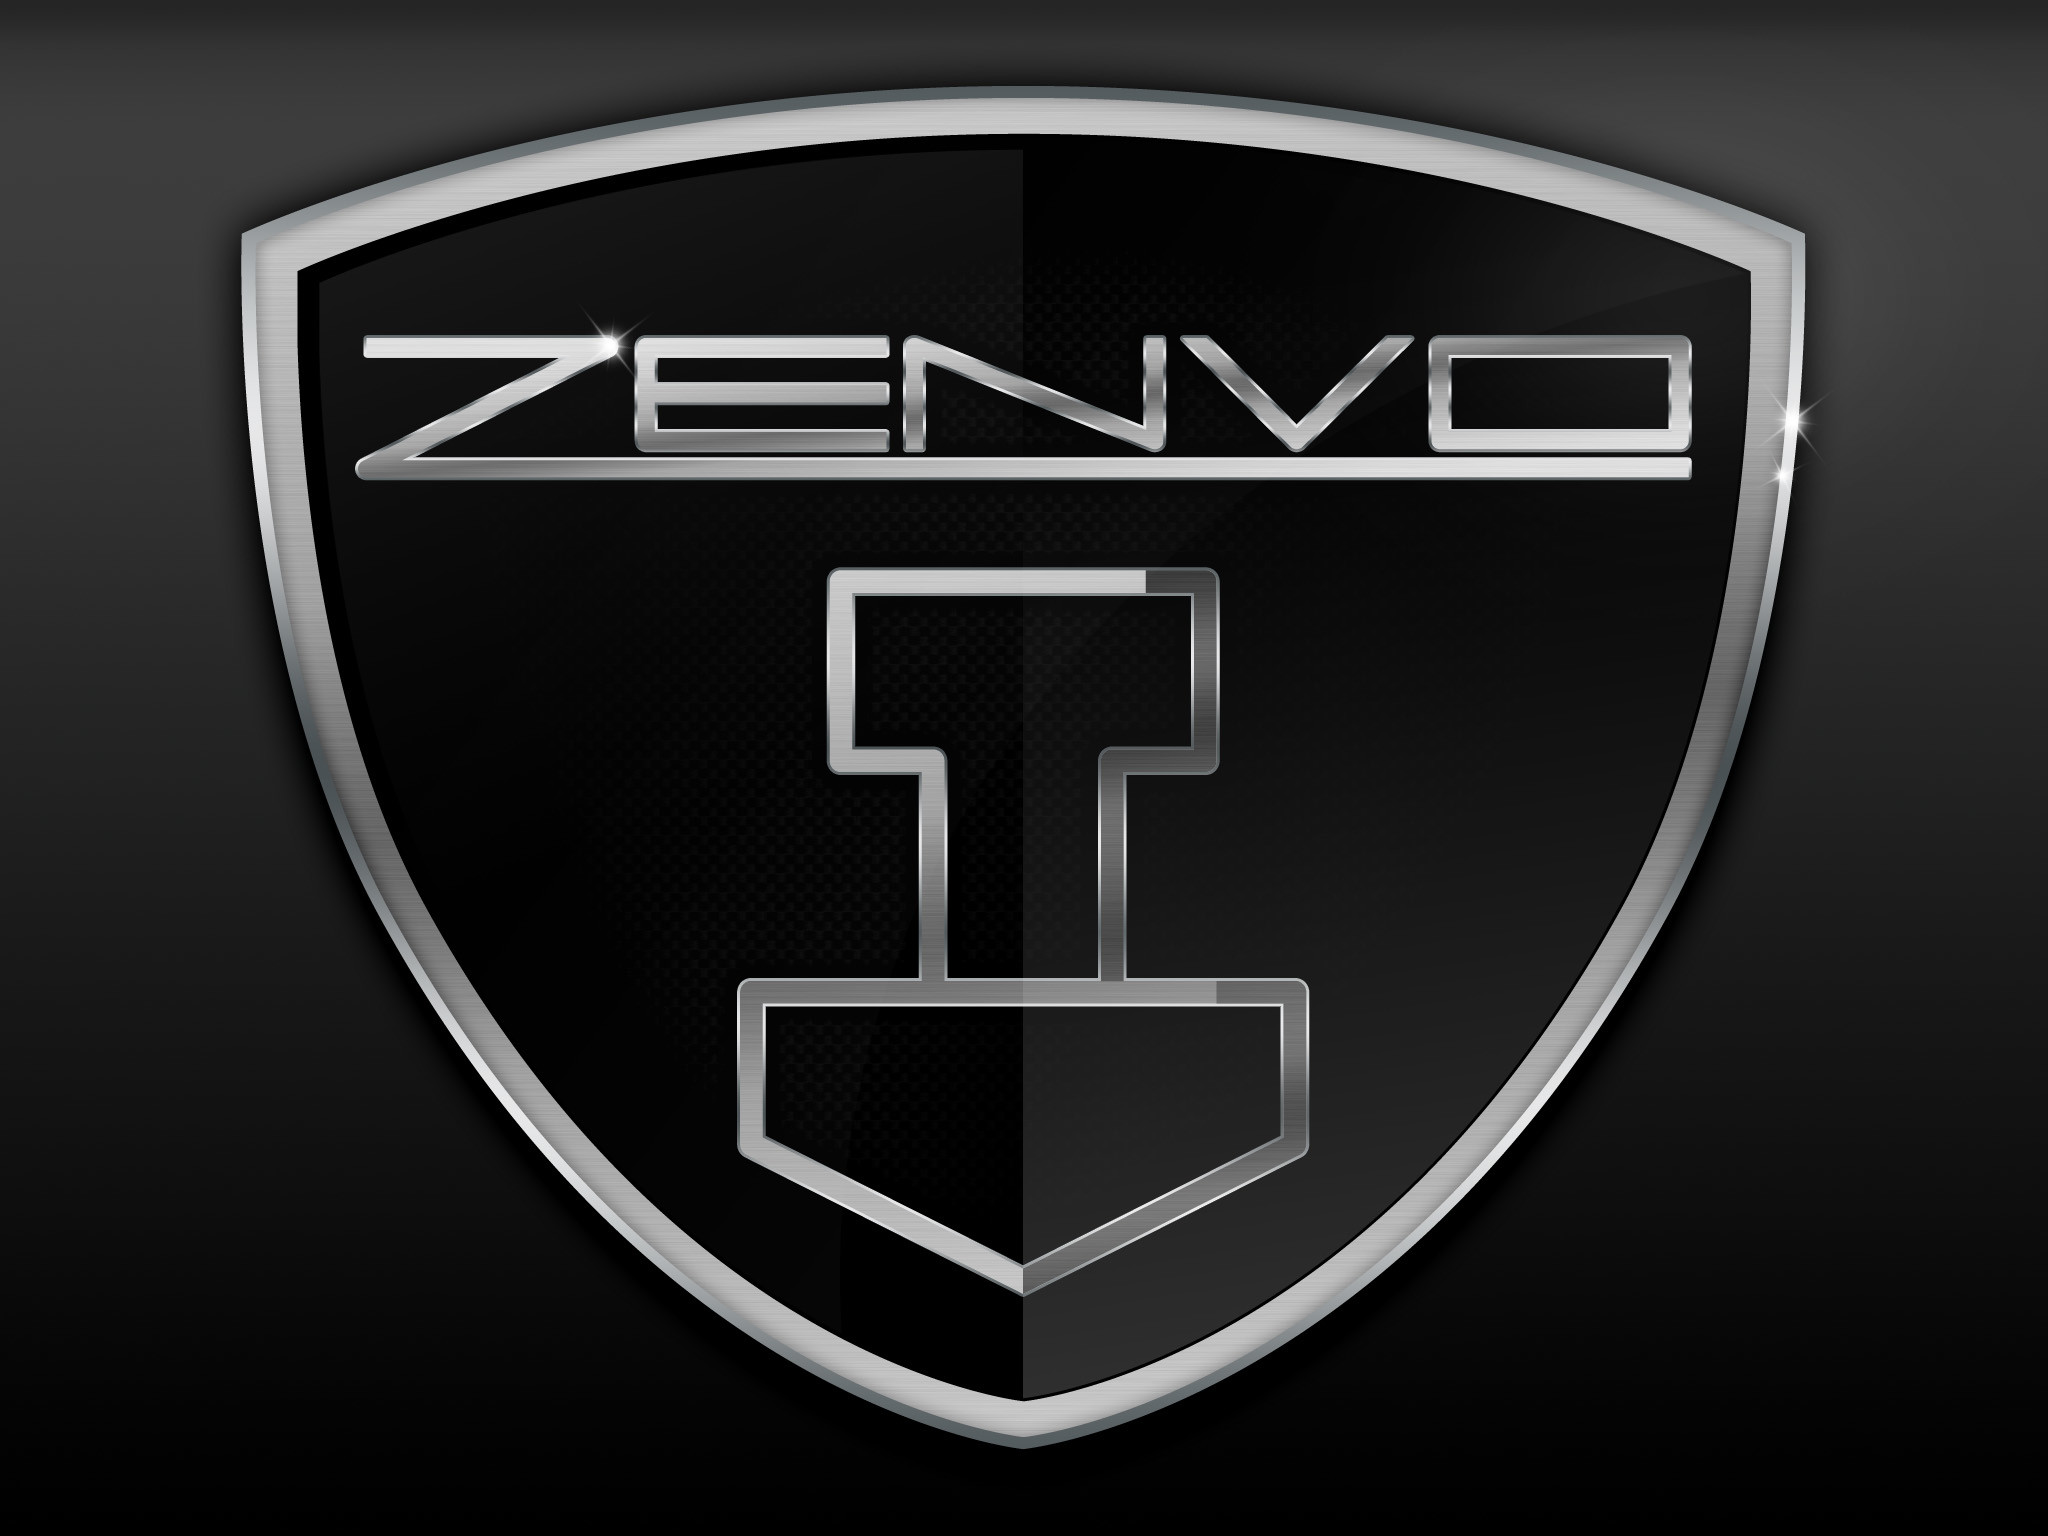 ZENVO logo hd – Google Search